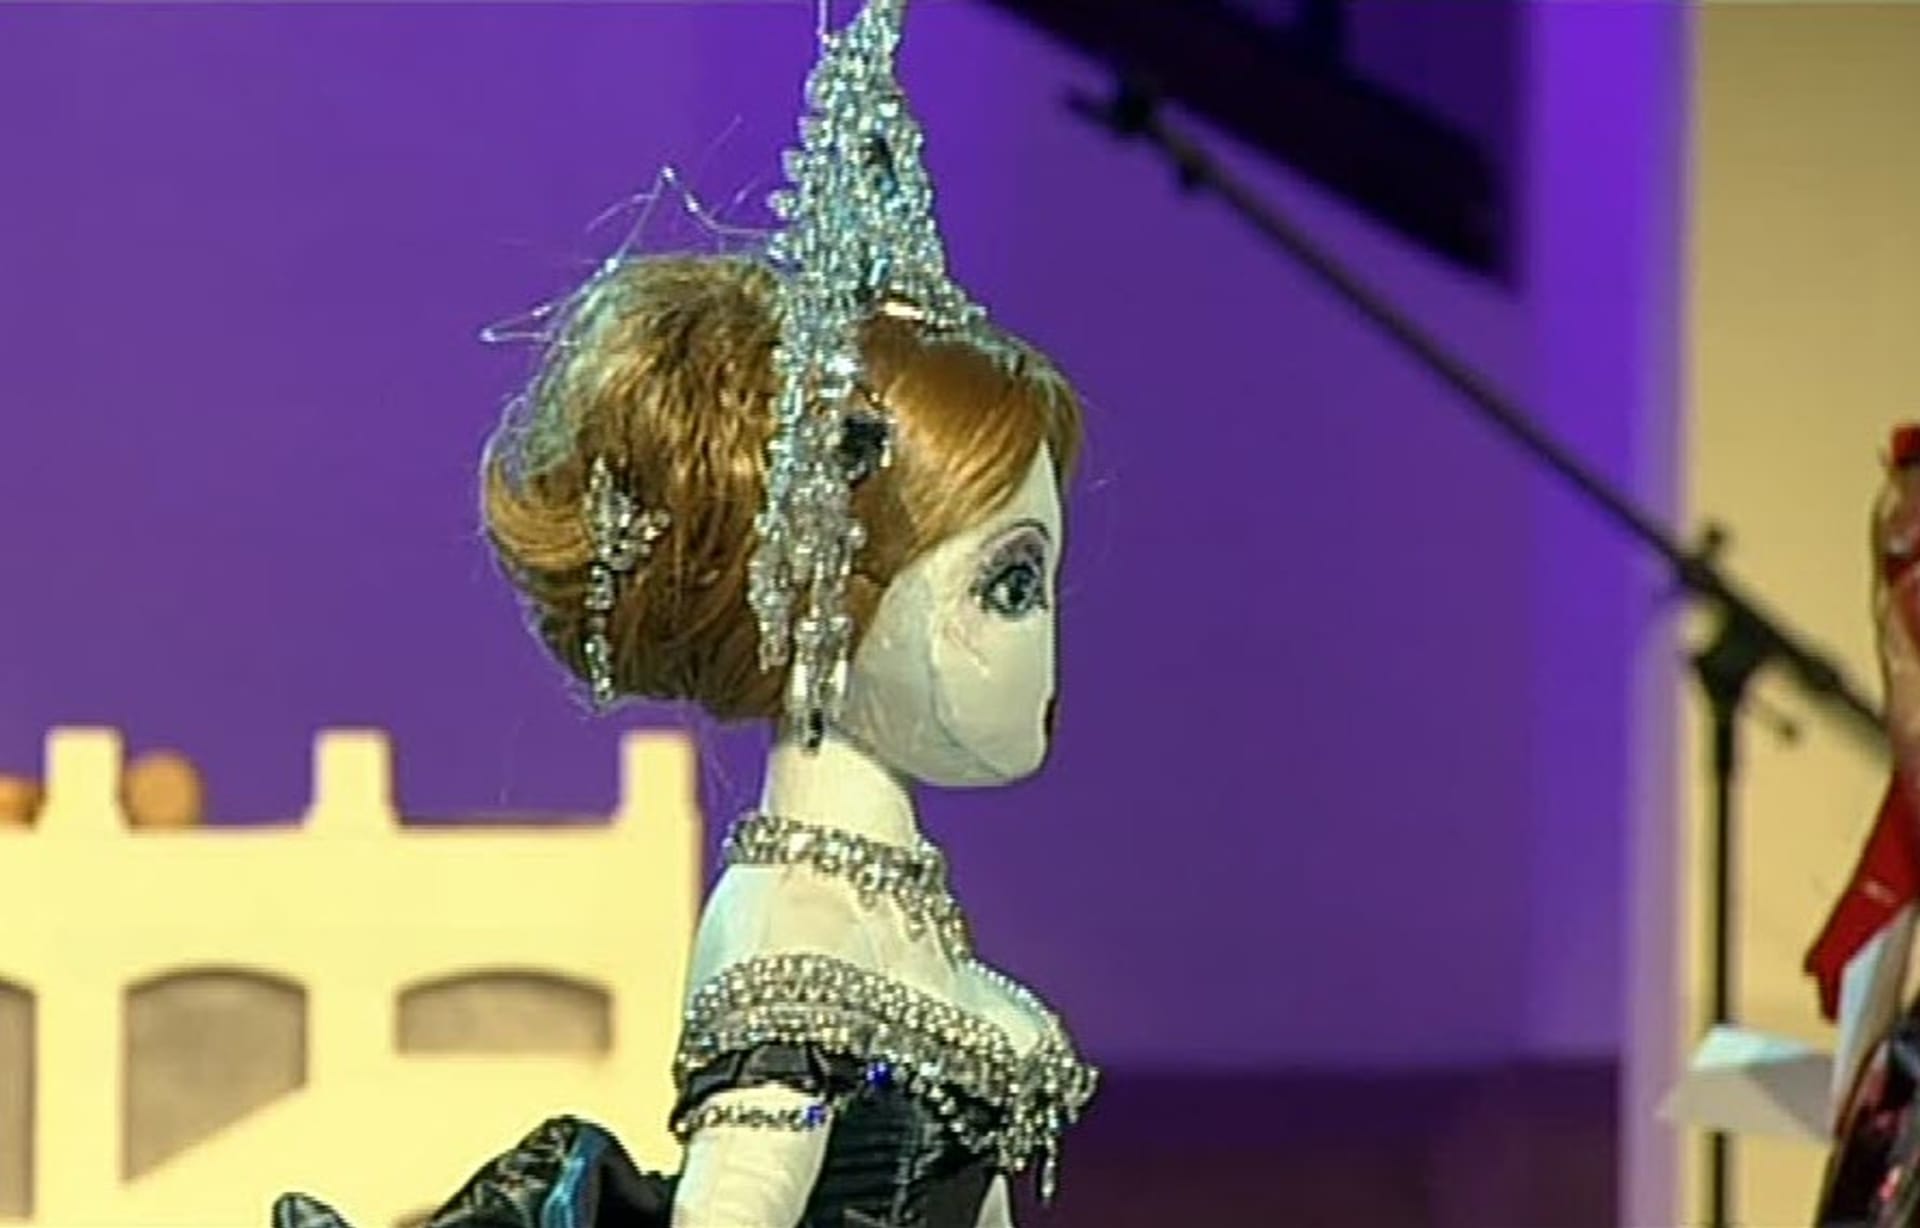 Video VIP zprávy: Tahle panenka se na charitativní dražbě prodala za neuvěřitelných 500 000 korun